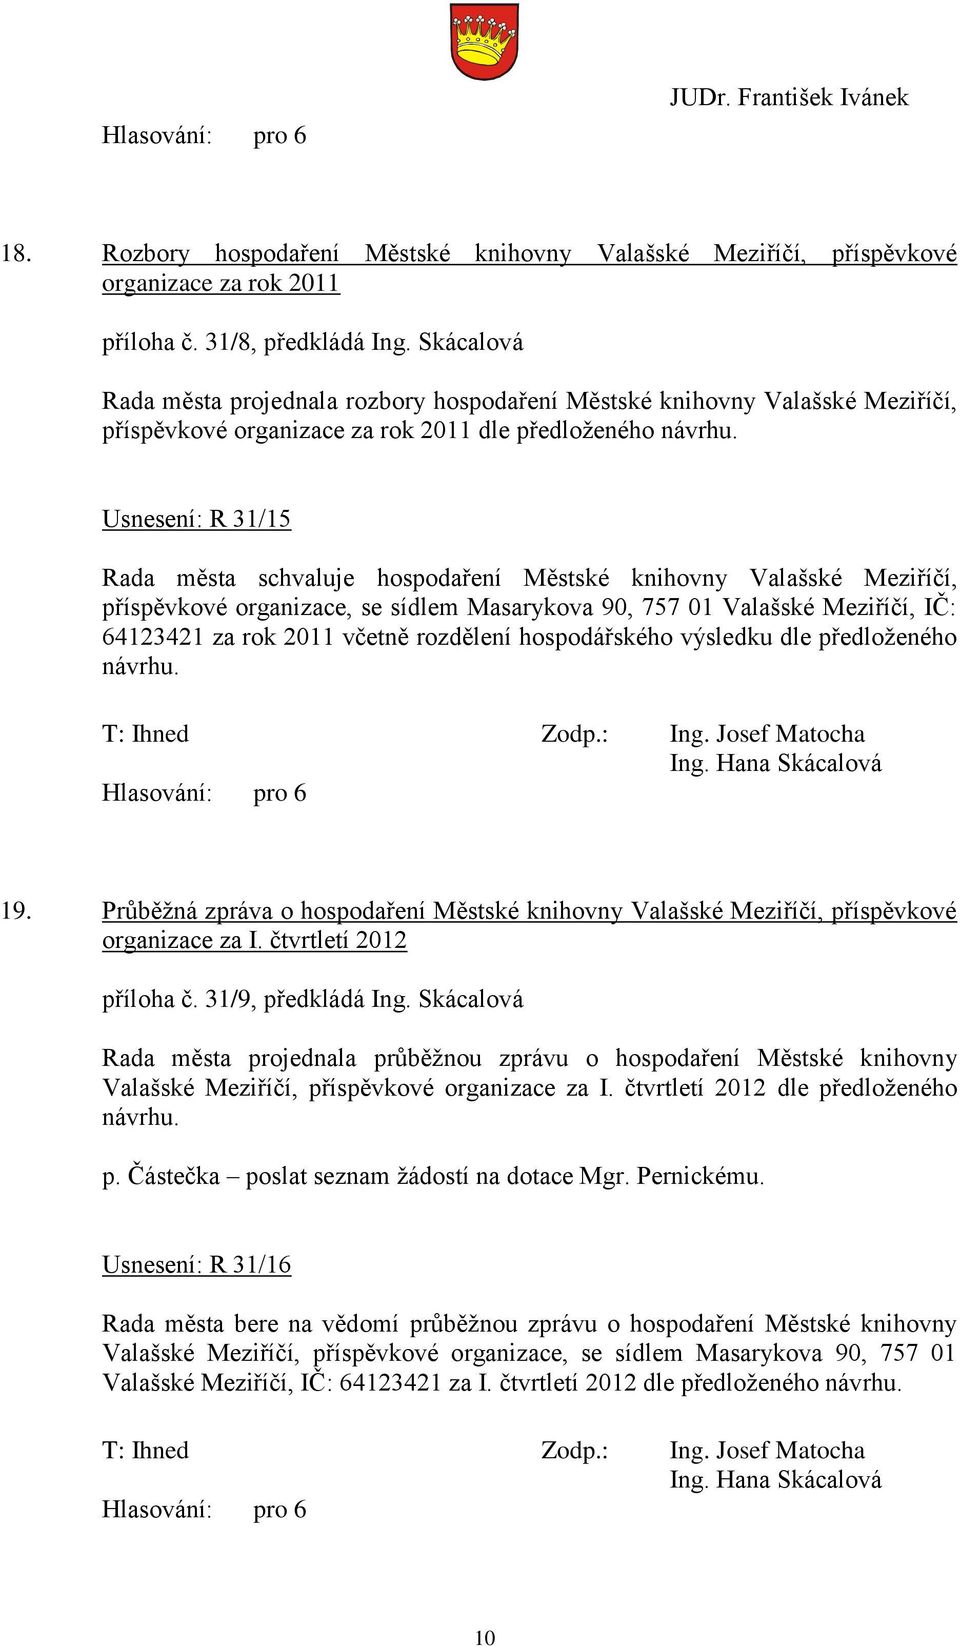 Usnesení: R 31/15 Rada města schvaluje hospodaření Městské knihovny Valašské Meziříčí, příspěvkové organizace, se sídlem Masarykova 90, 757 01 Valašské Meziříčí, IČ: 64123421 za rok 2011 včetně